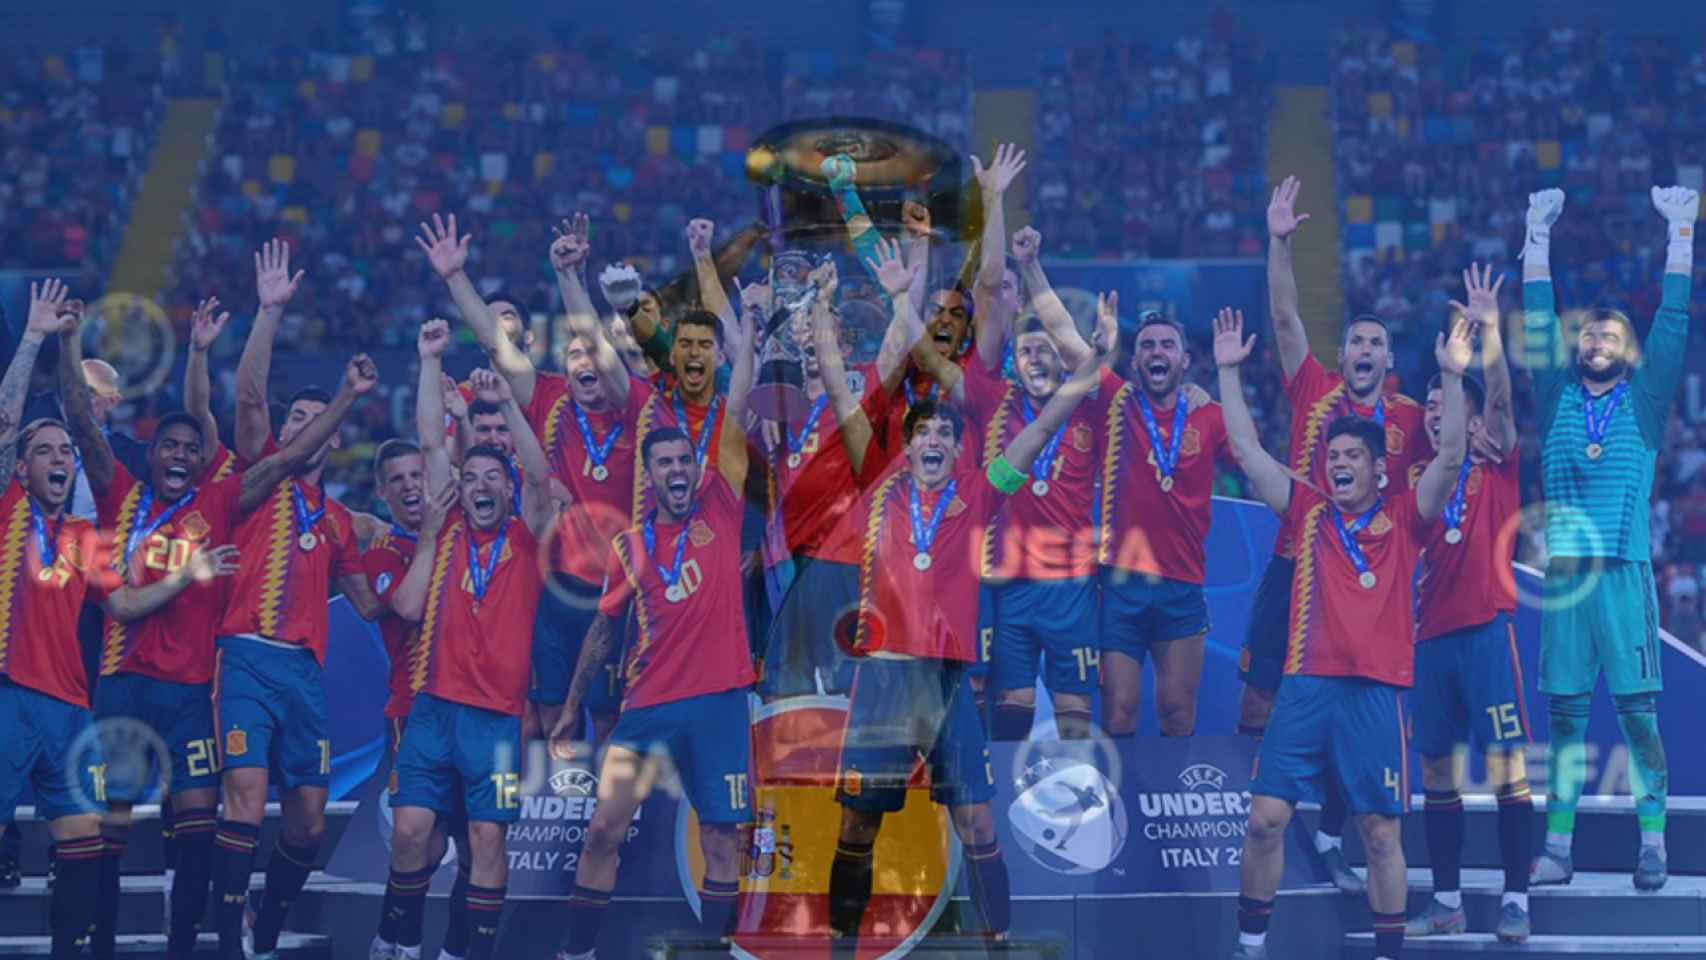 La selección que consiguió el Europeo sub21 de 2019 y el título, en un fotomontaje